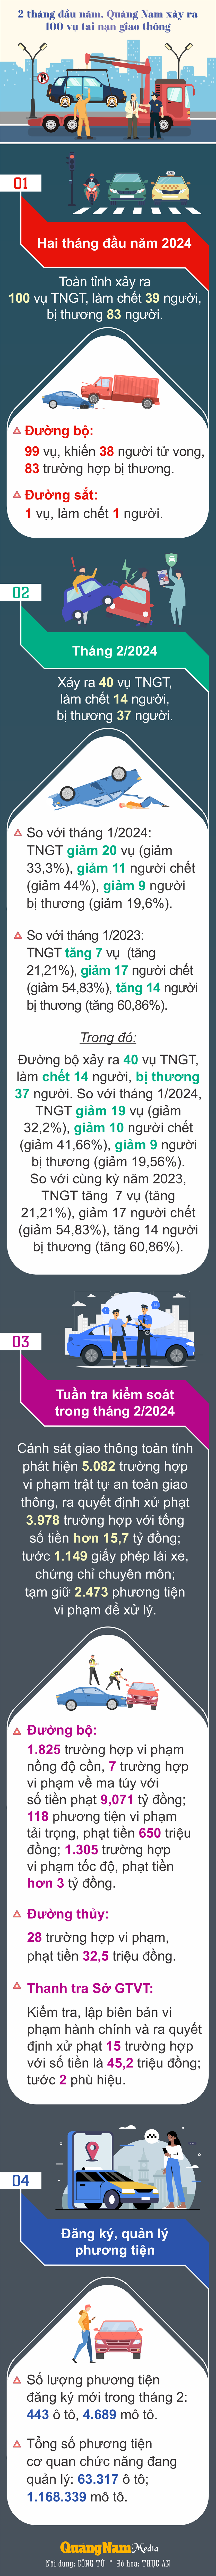 infographic-2-thang-dau-nam-quang-nam-xay-ra-100-vu-tai-nan-giao-thong(1).png